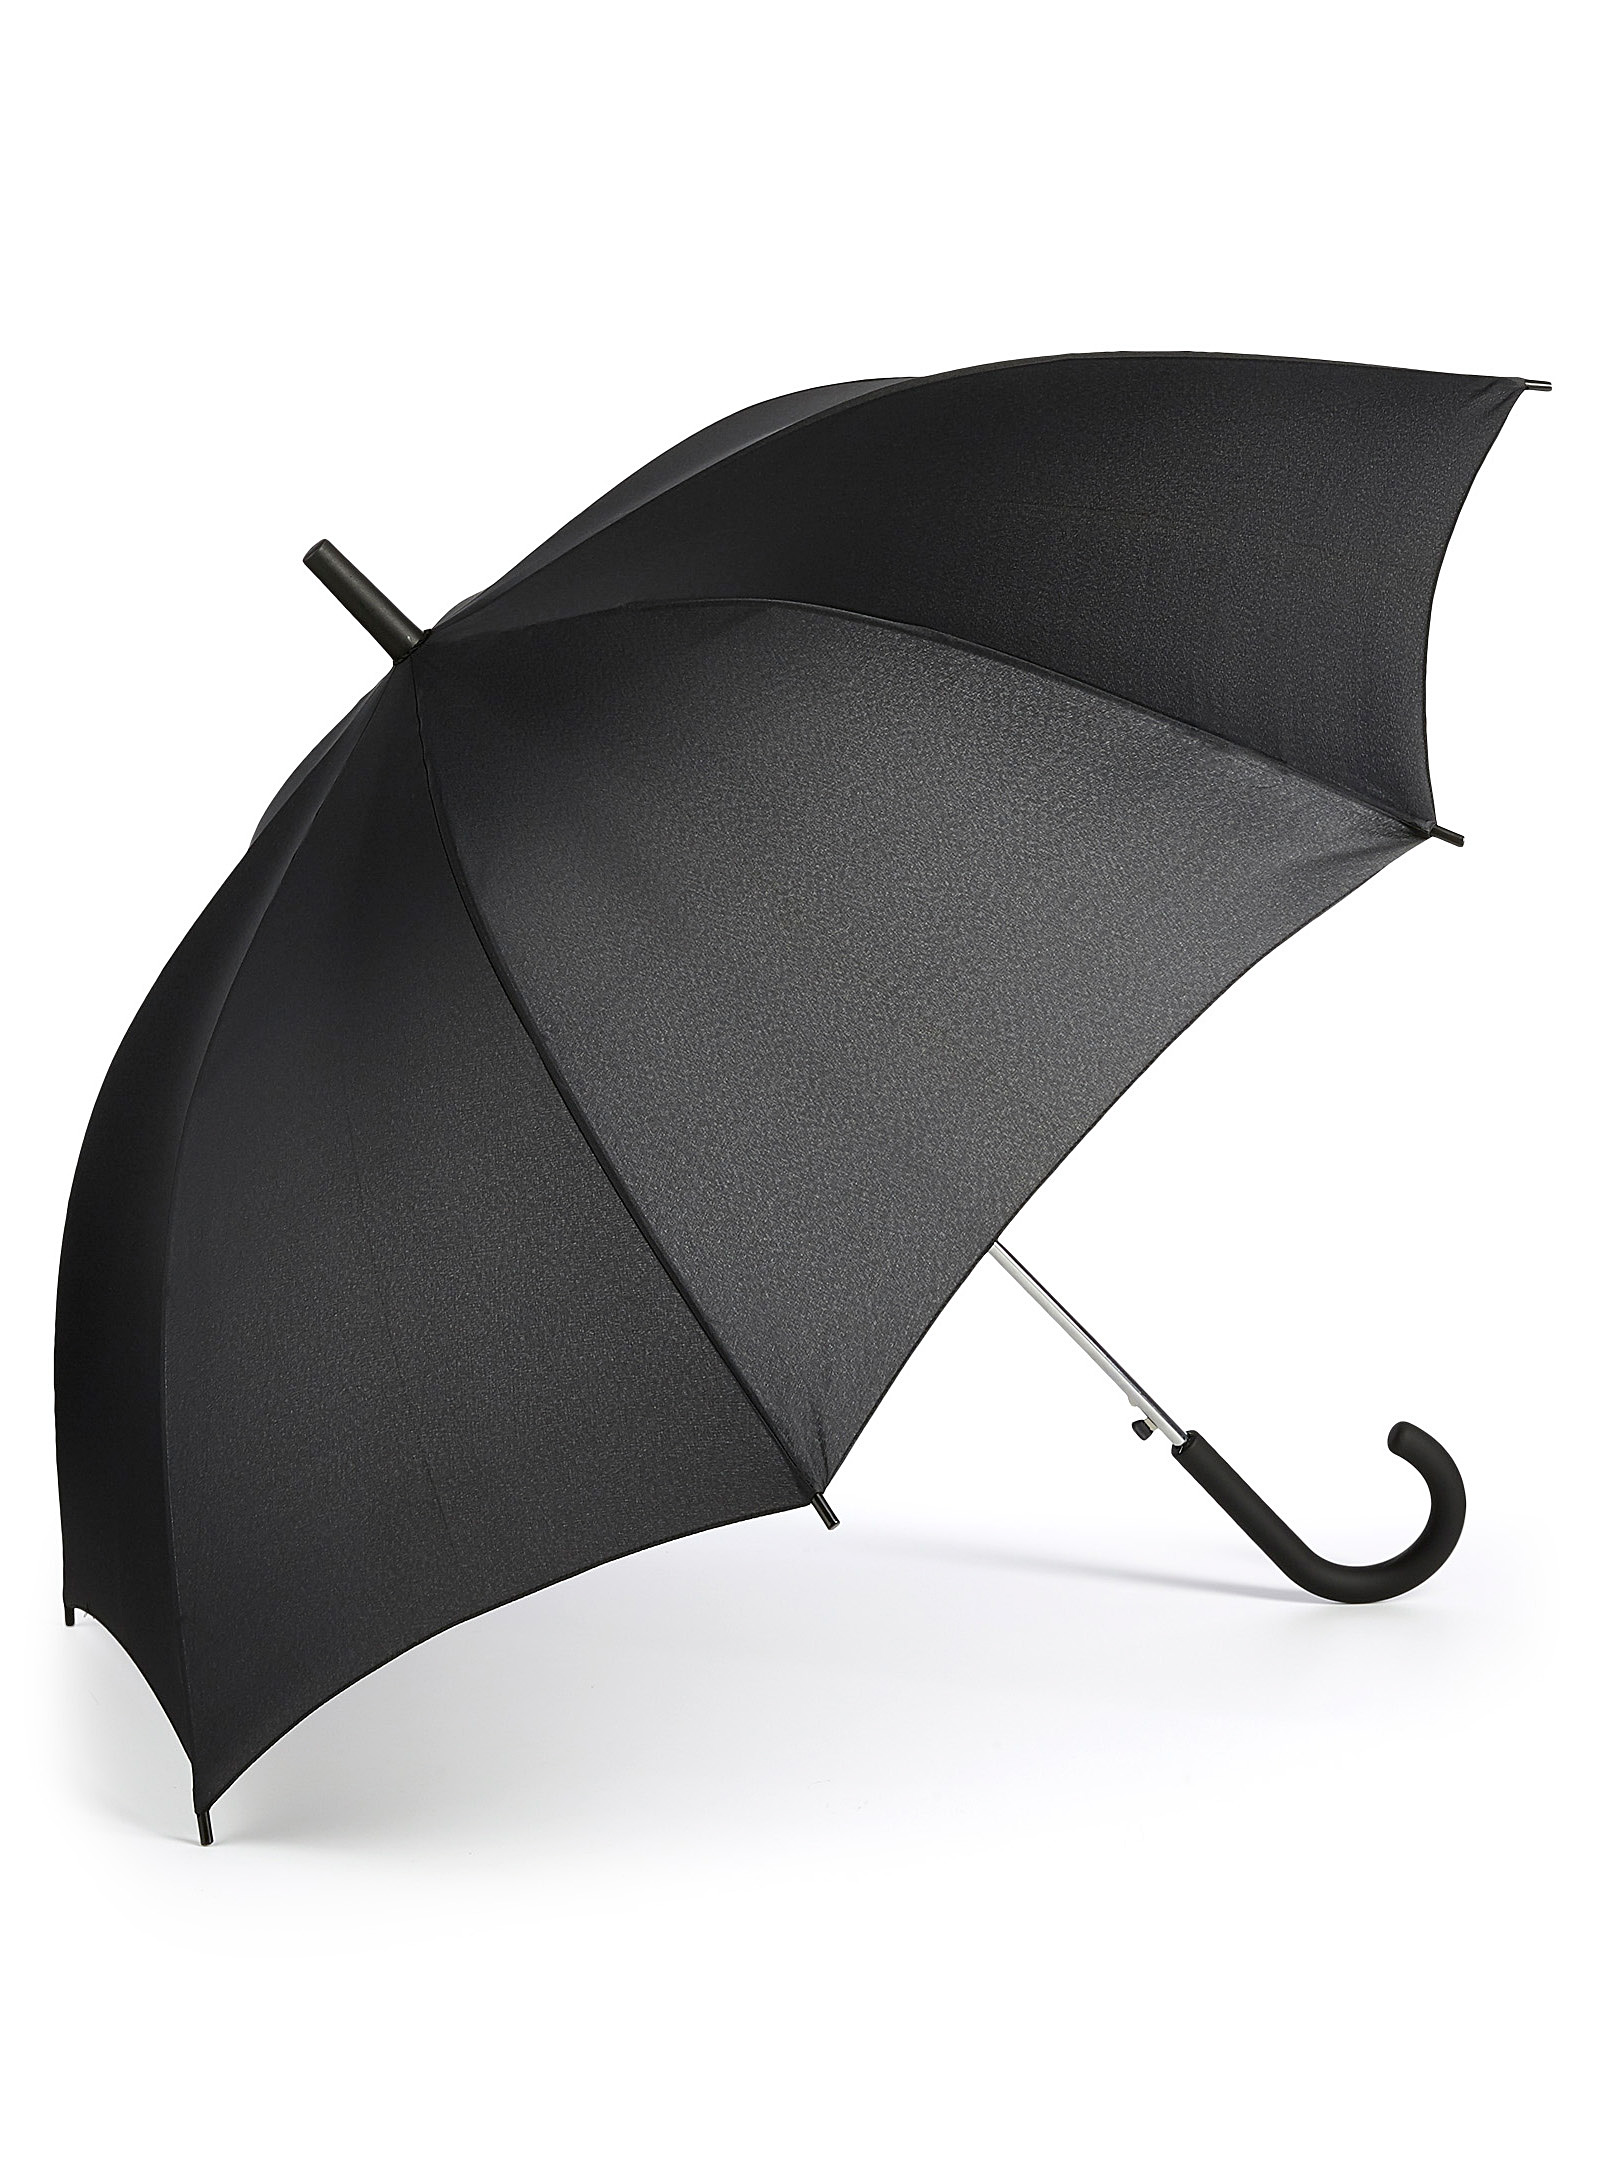 Le 31 Monochrome Umbrella In Black